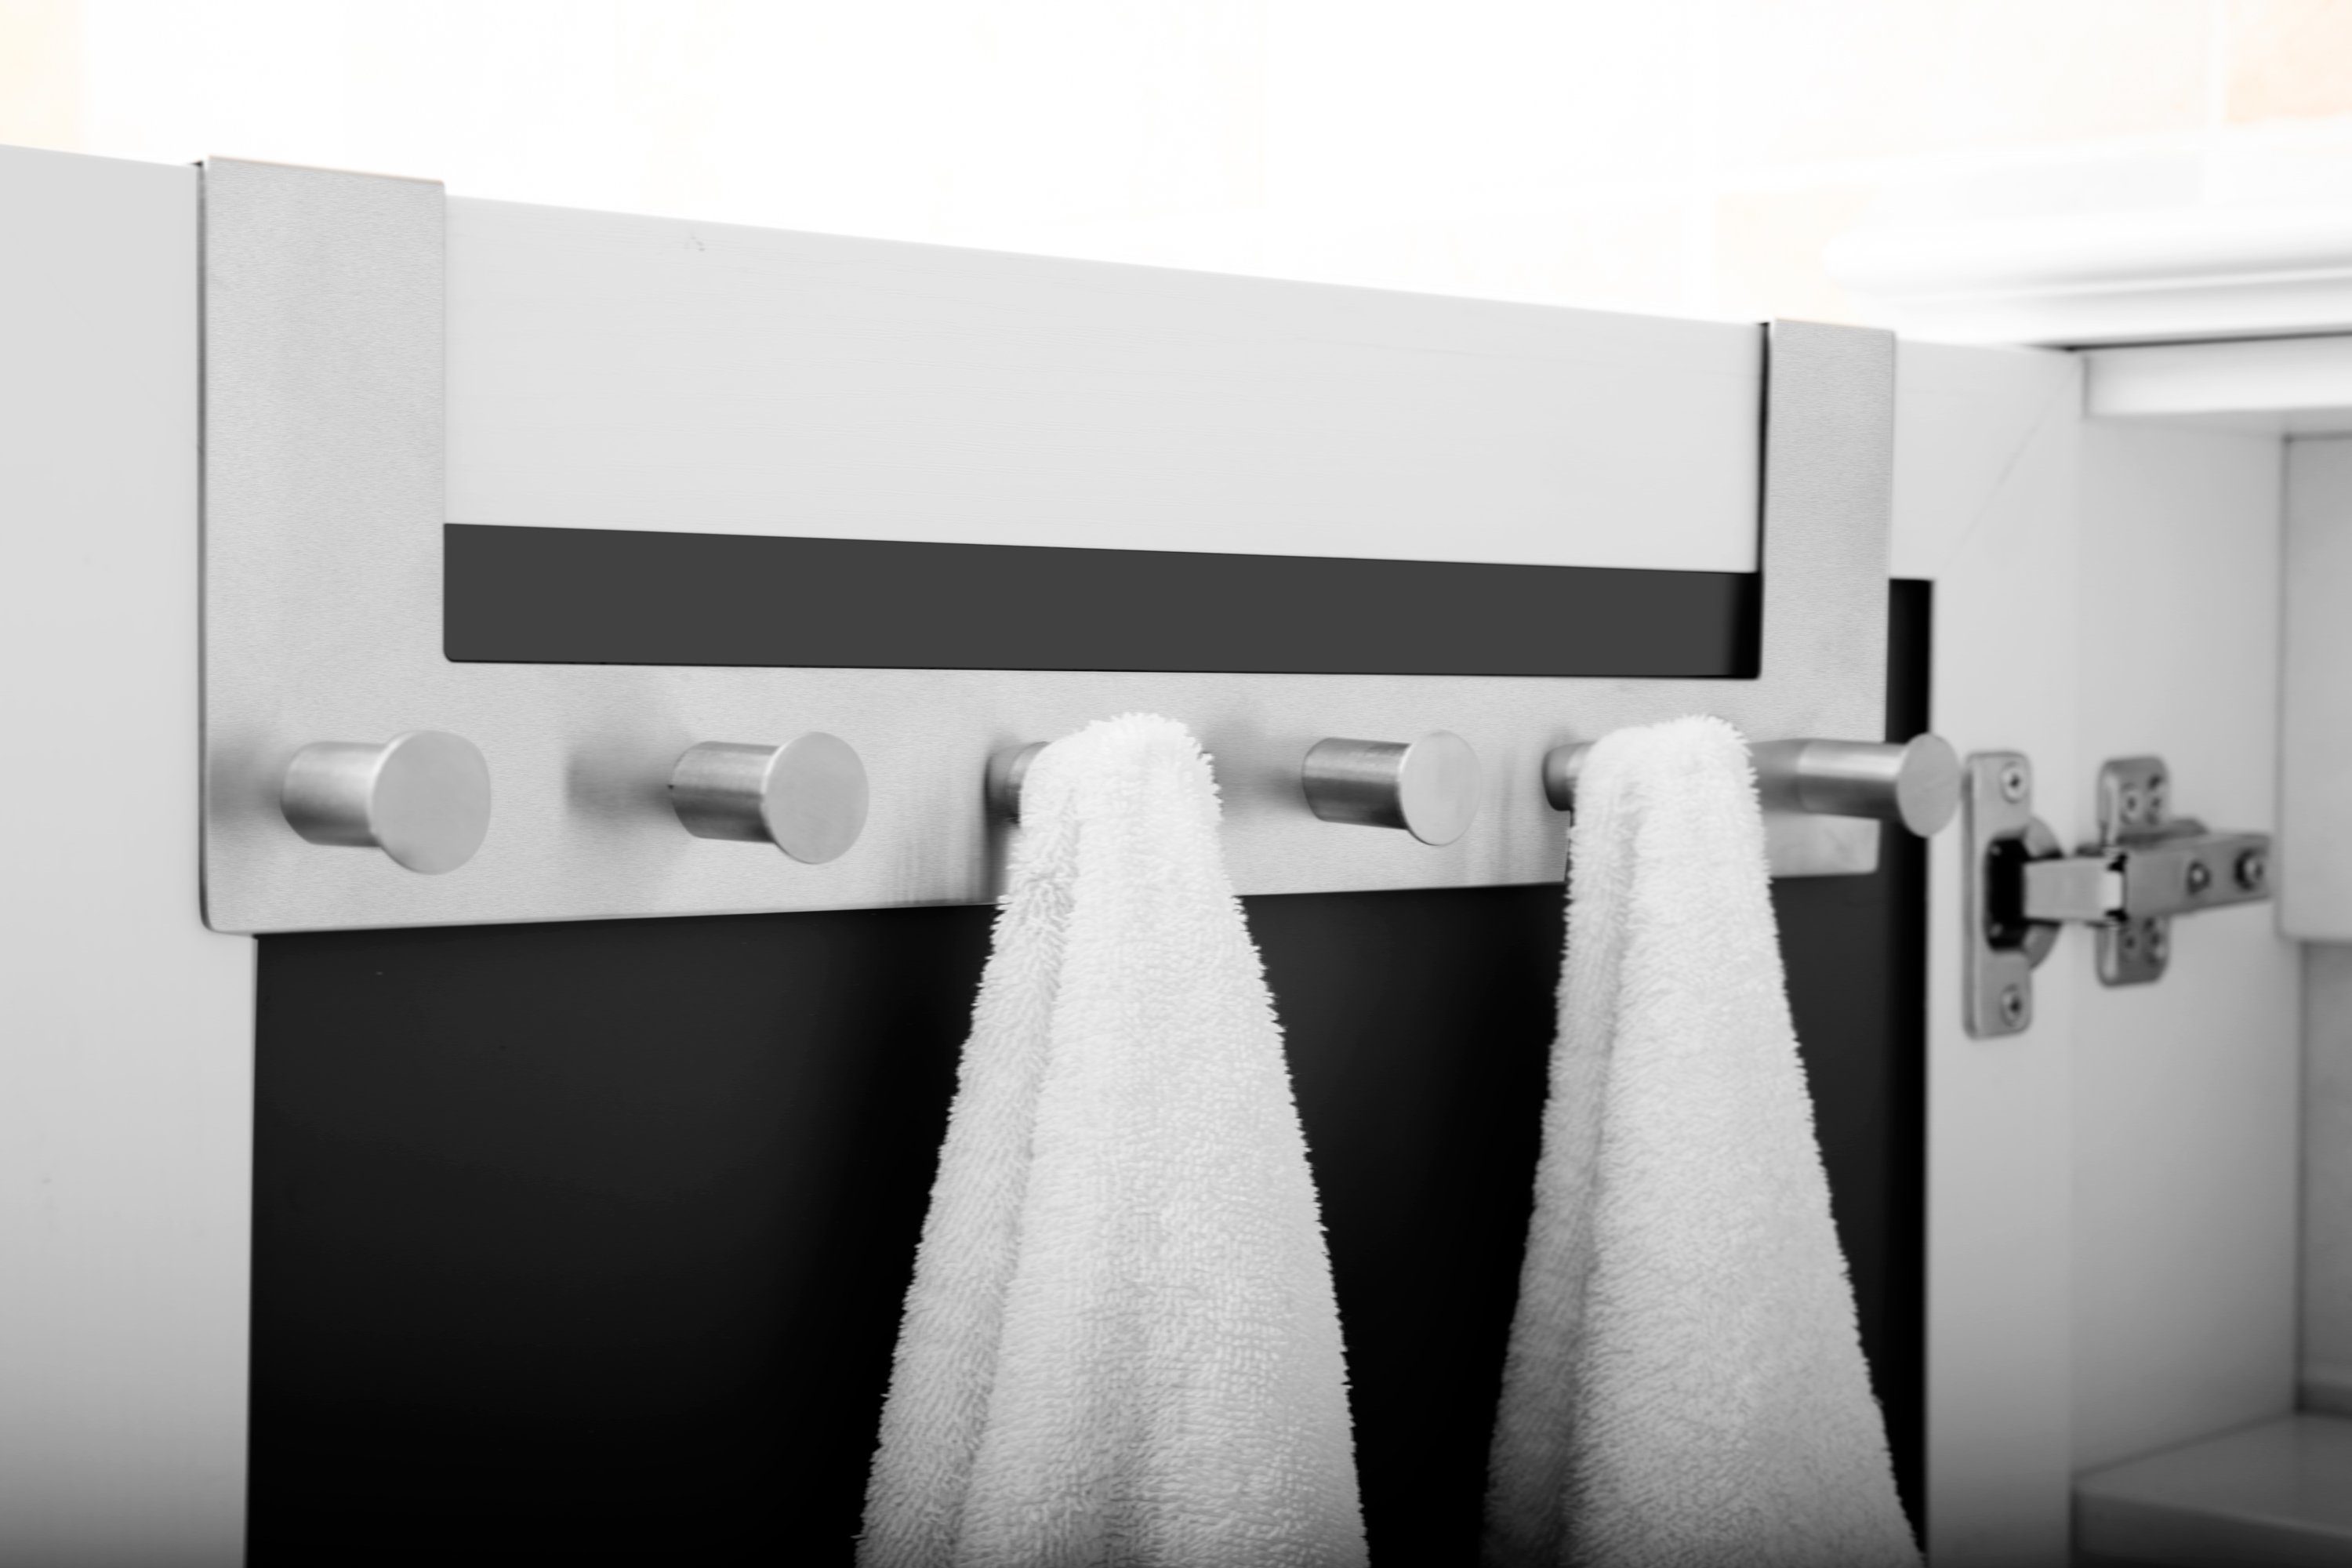 Bad Badezimmer, WC (Packung), Halterung Handtuchhaken Ambrosya ohne Montage Türgarderobe Handtuchstange Bohren Edelstahl, Tür Handtuchhalter Türen, Badetuchhalter -